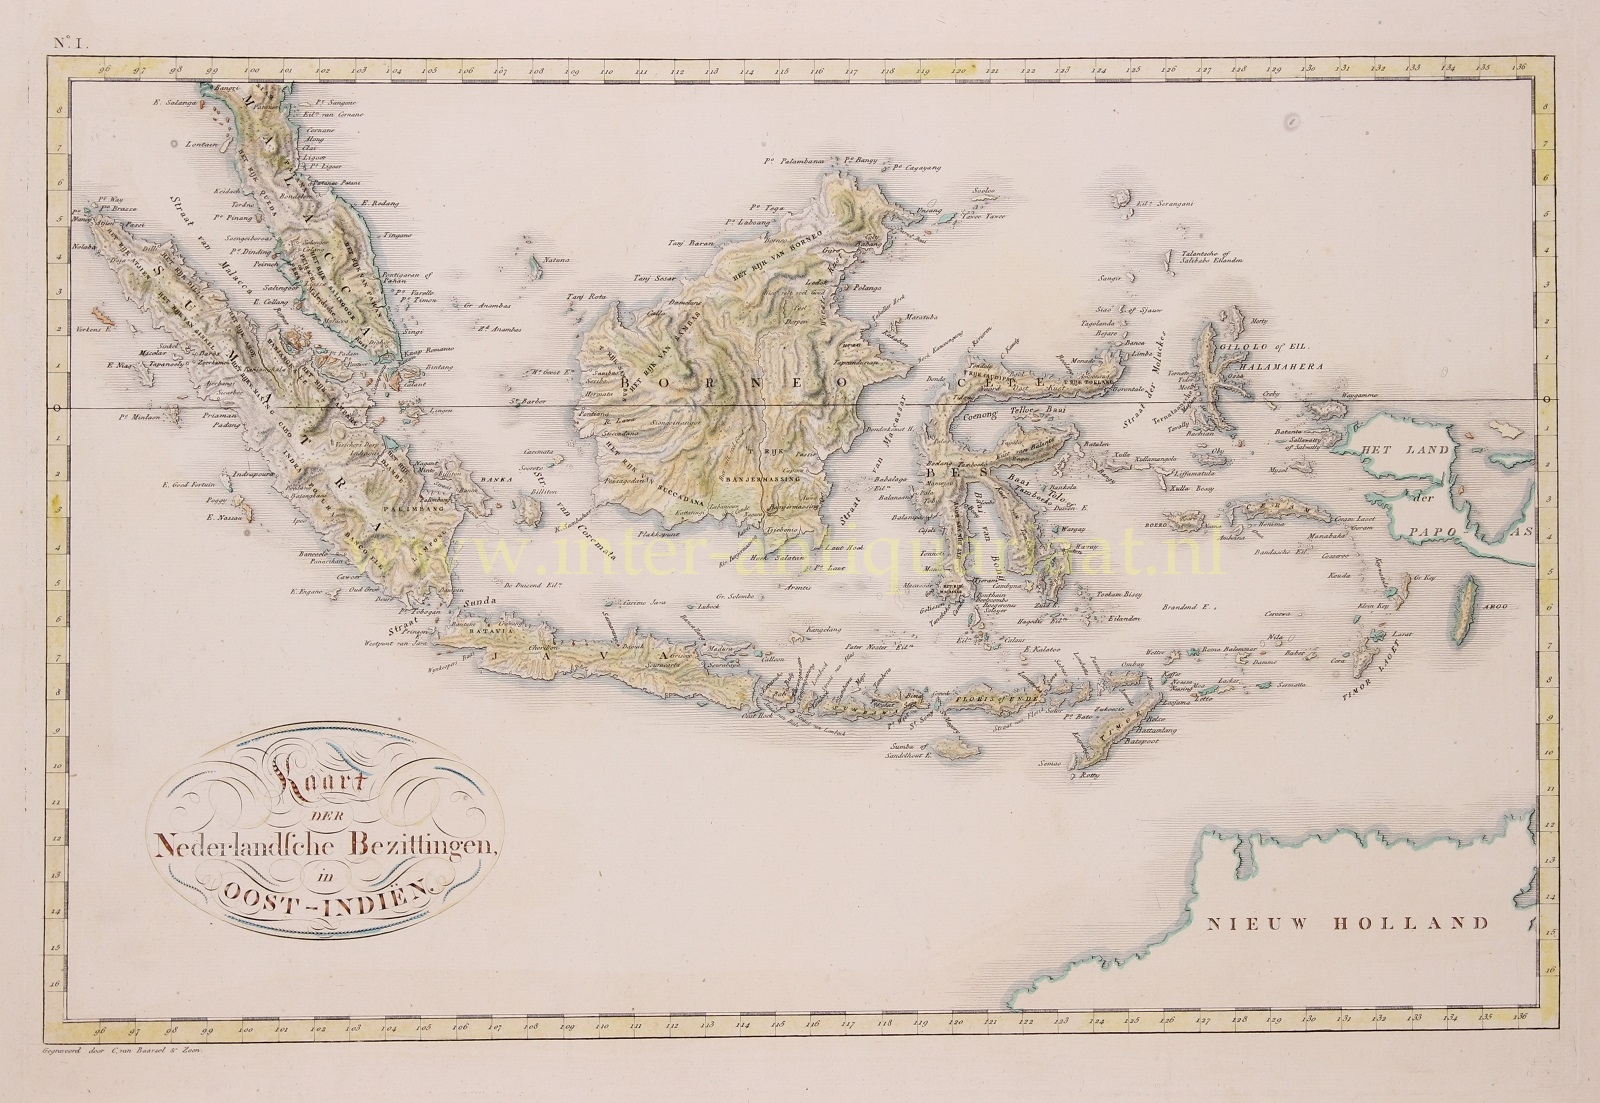  - Dutch East Indies - Cornelis van Baarsel, 1818